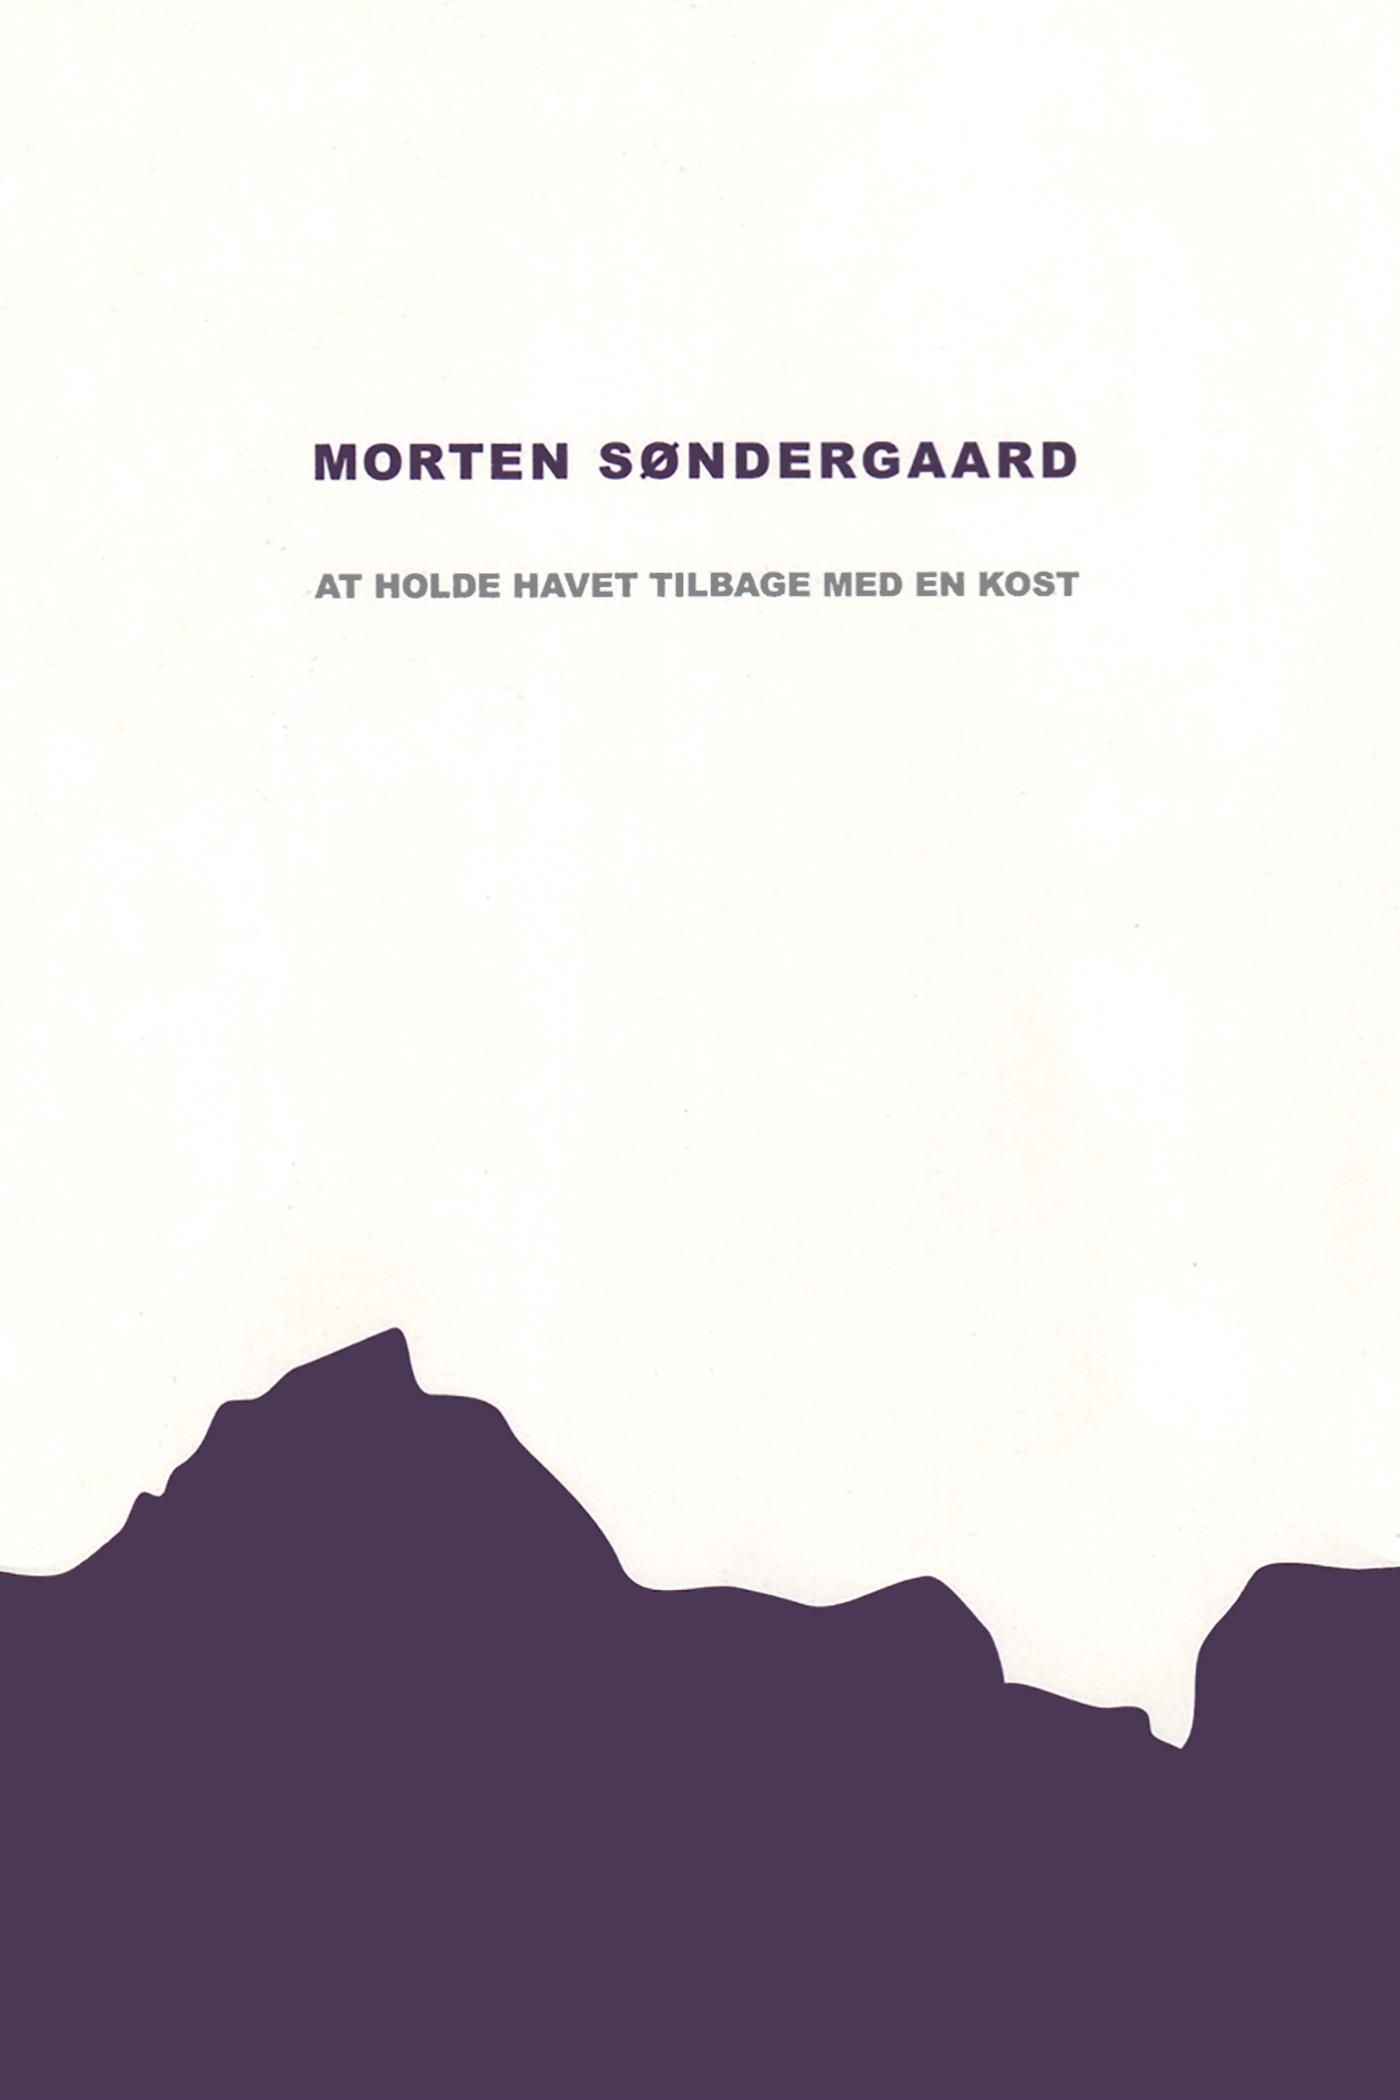 At holde havet tilbage med en kost, e-bok av Morten Søndergaard